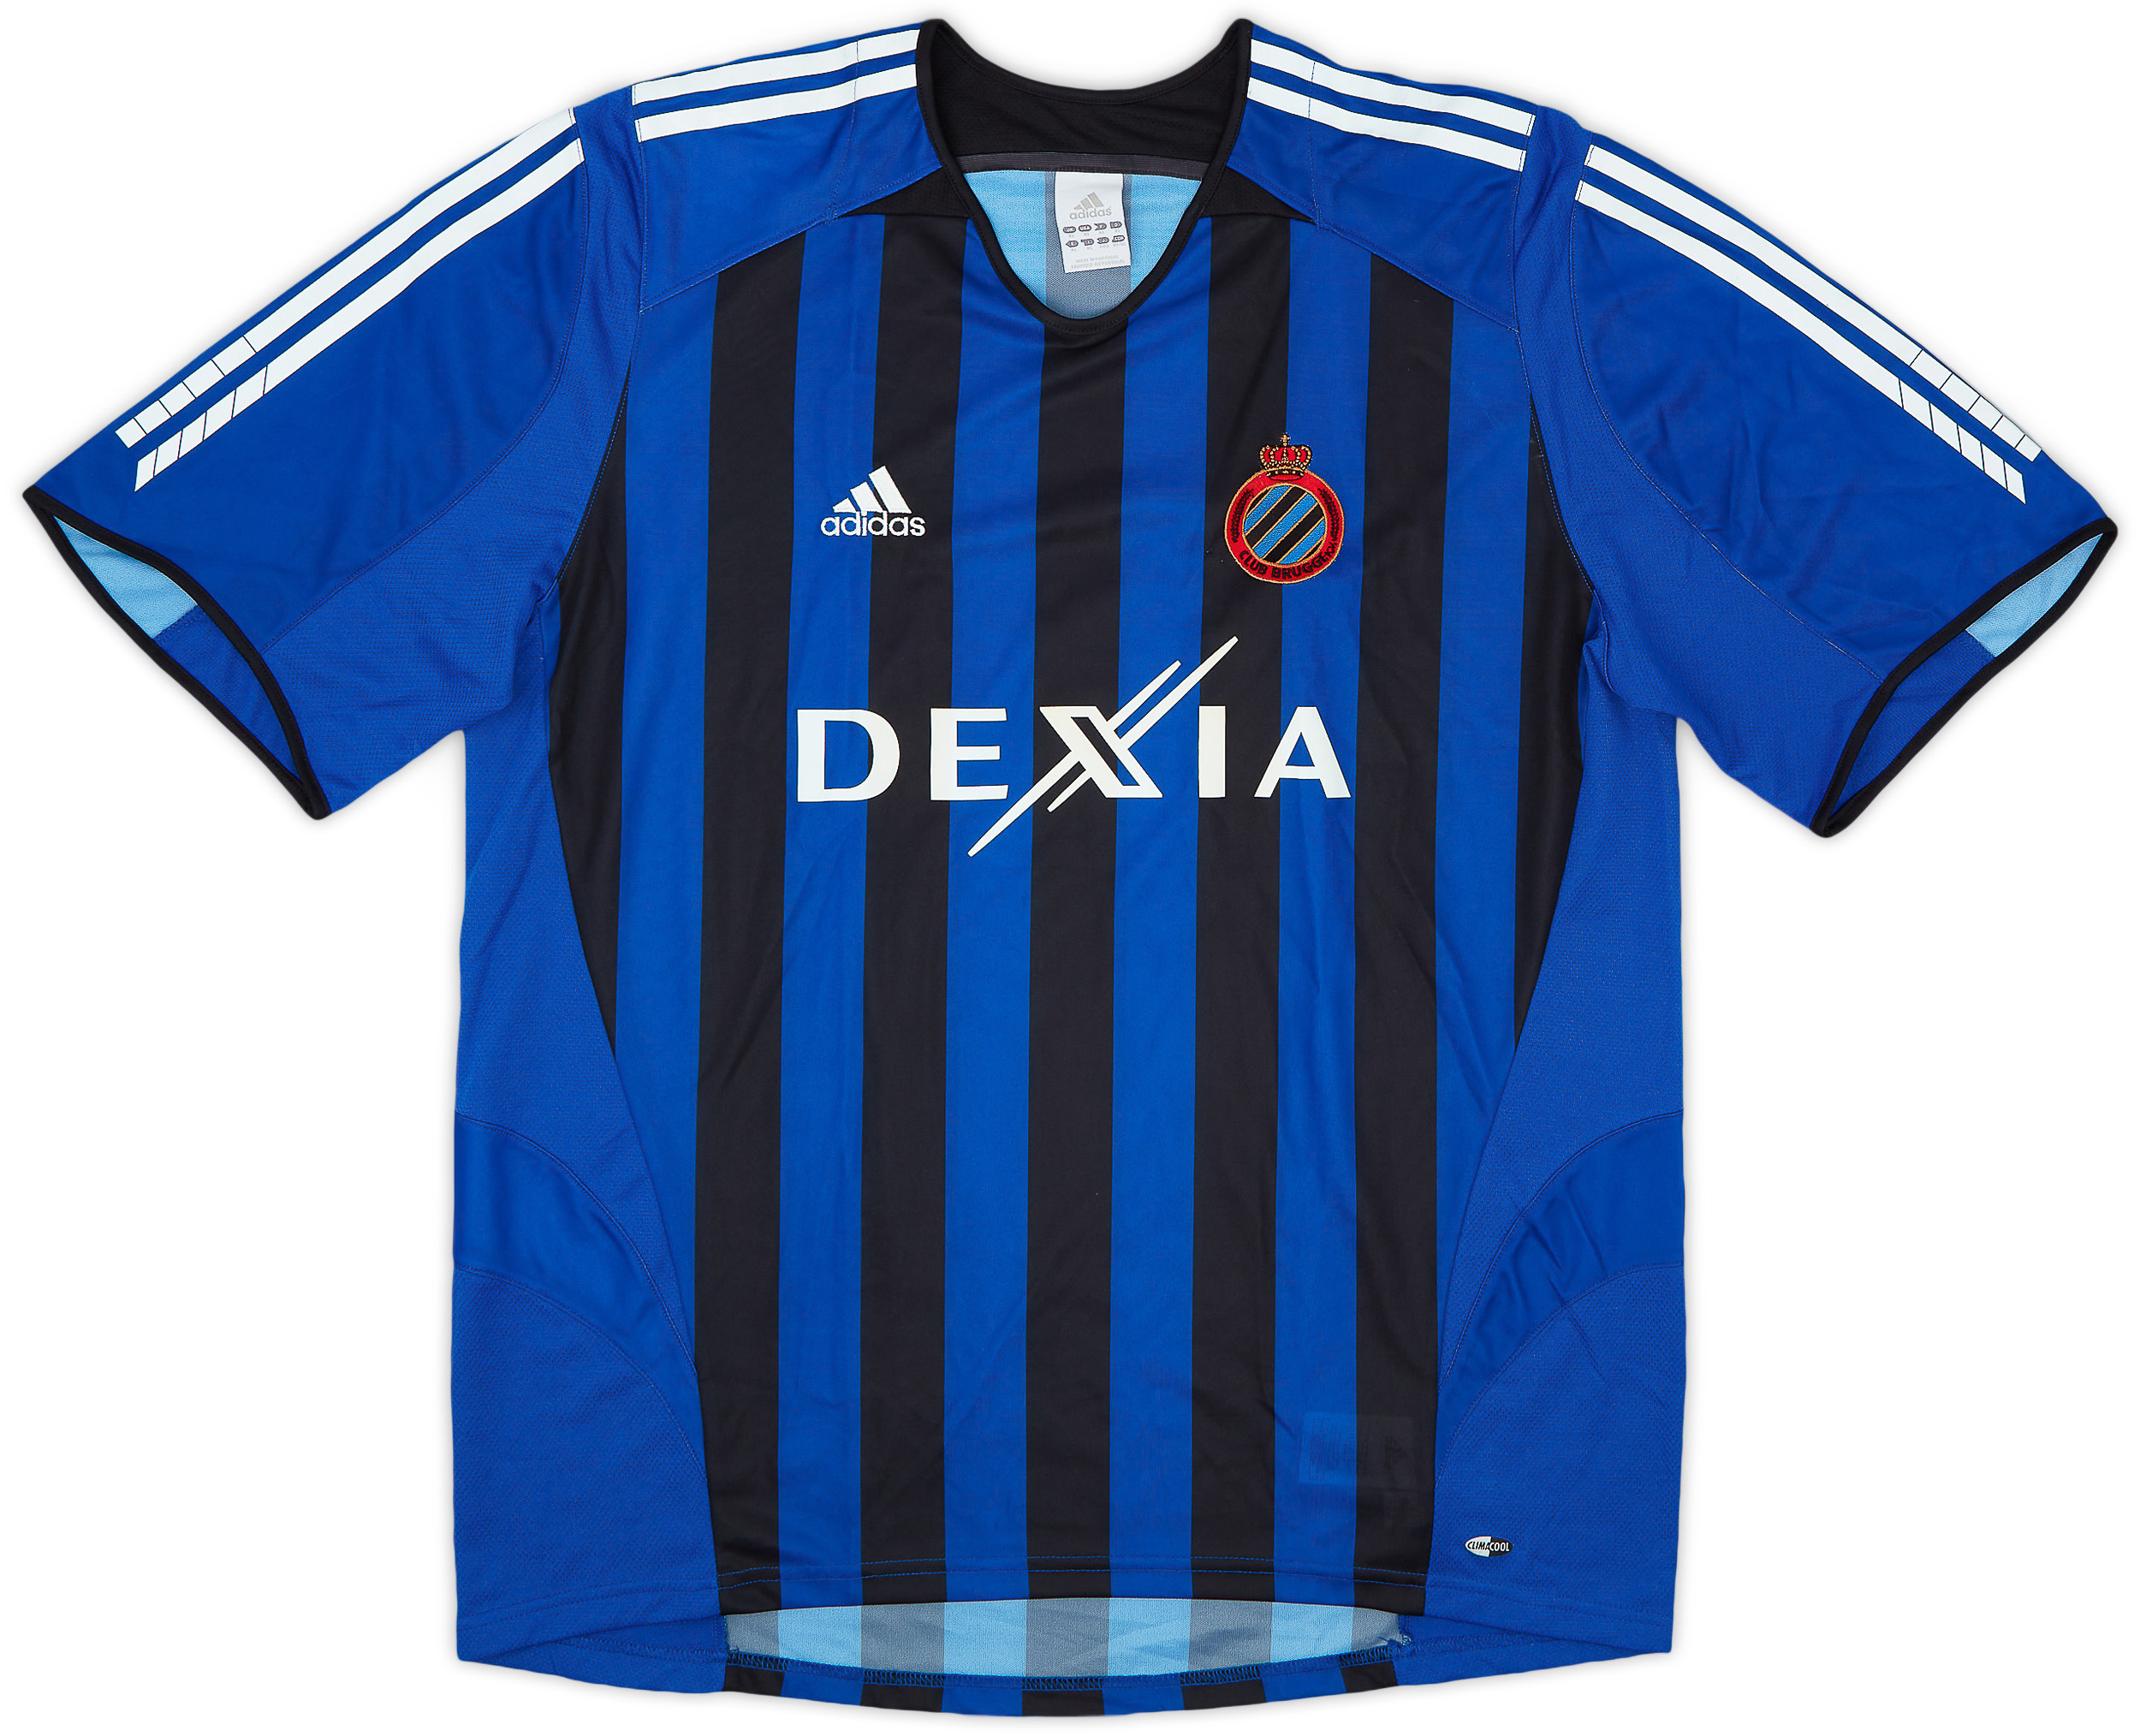 Club Brugge  home shirt (Original)